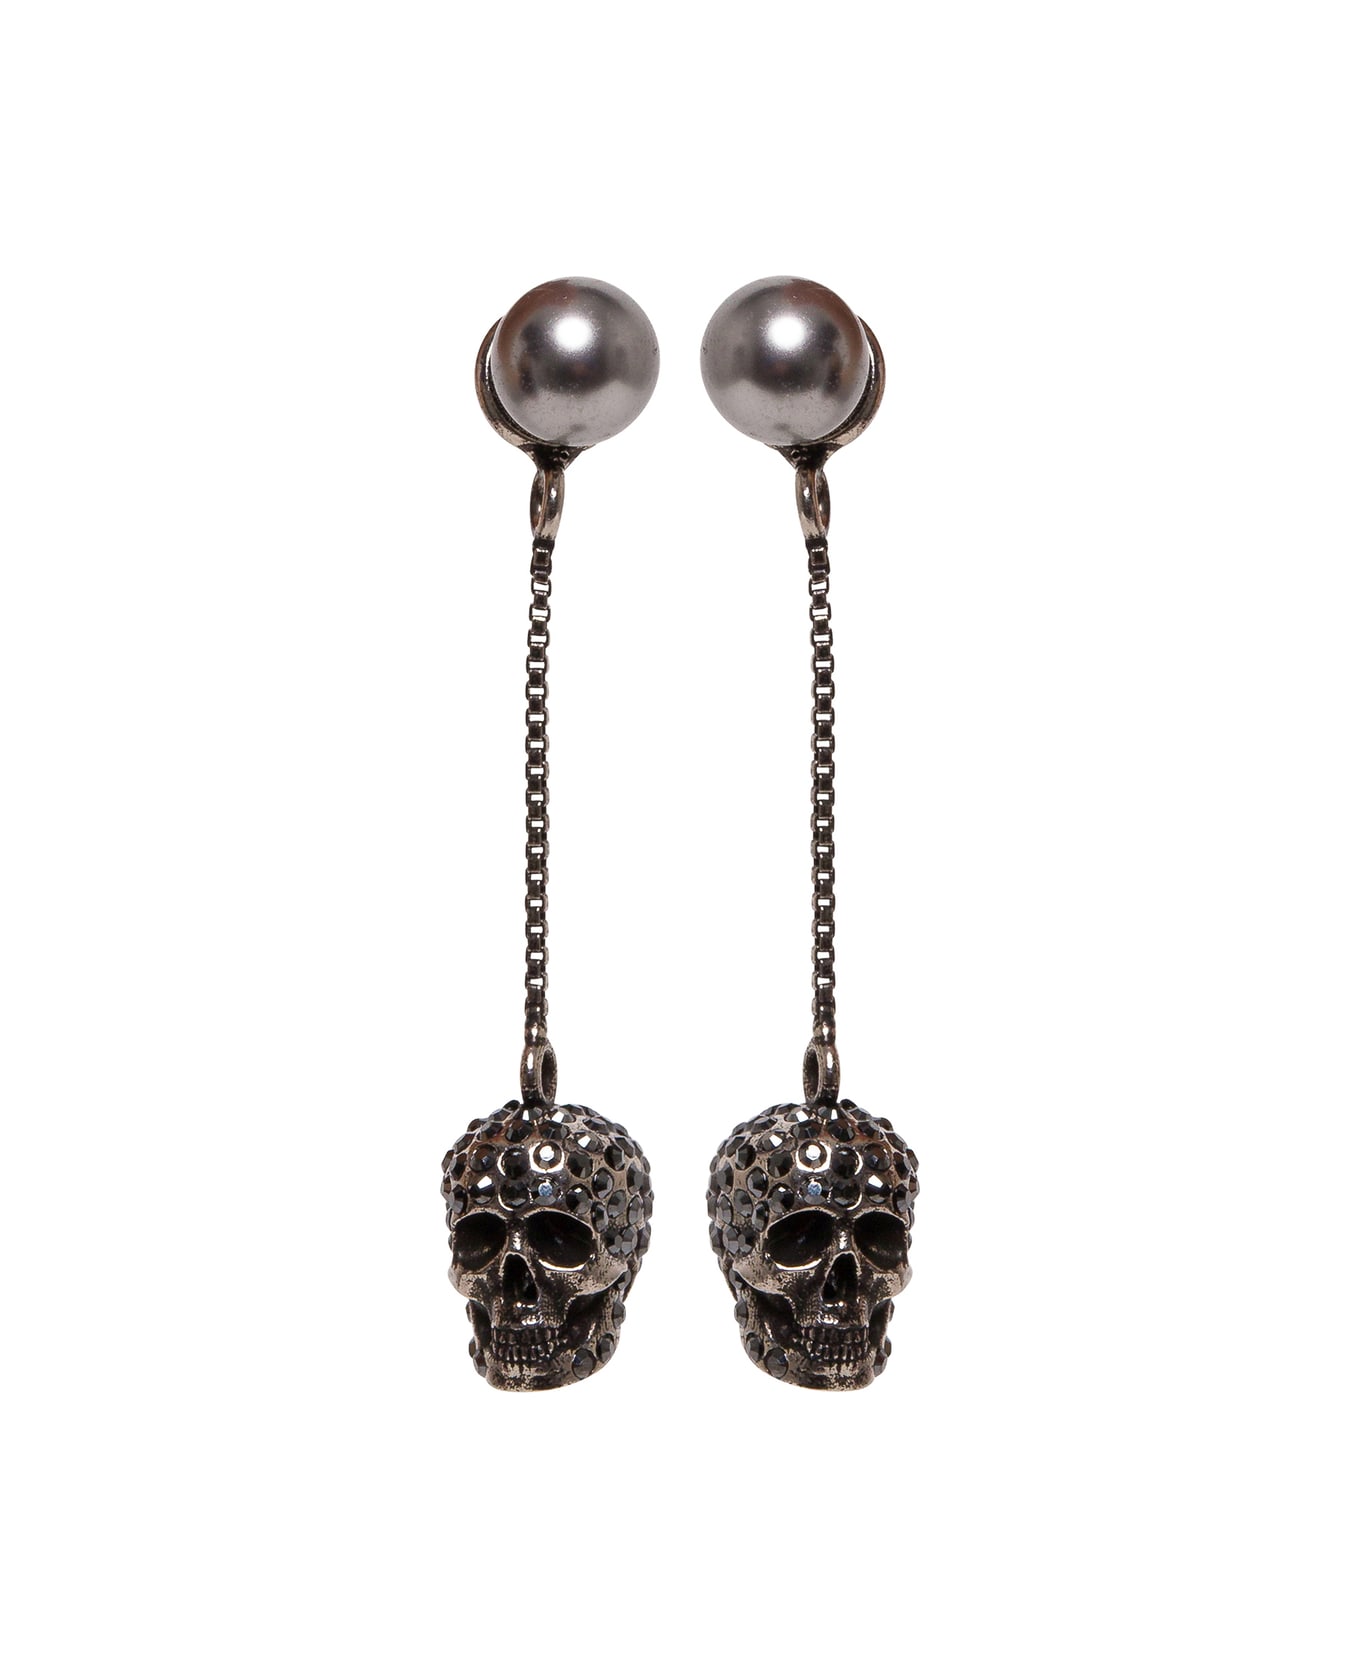 Alexander McQueen Skull Silver Colored Brass Earrings - Metallic